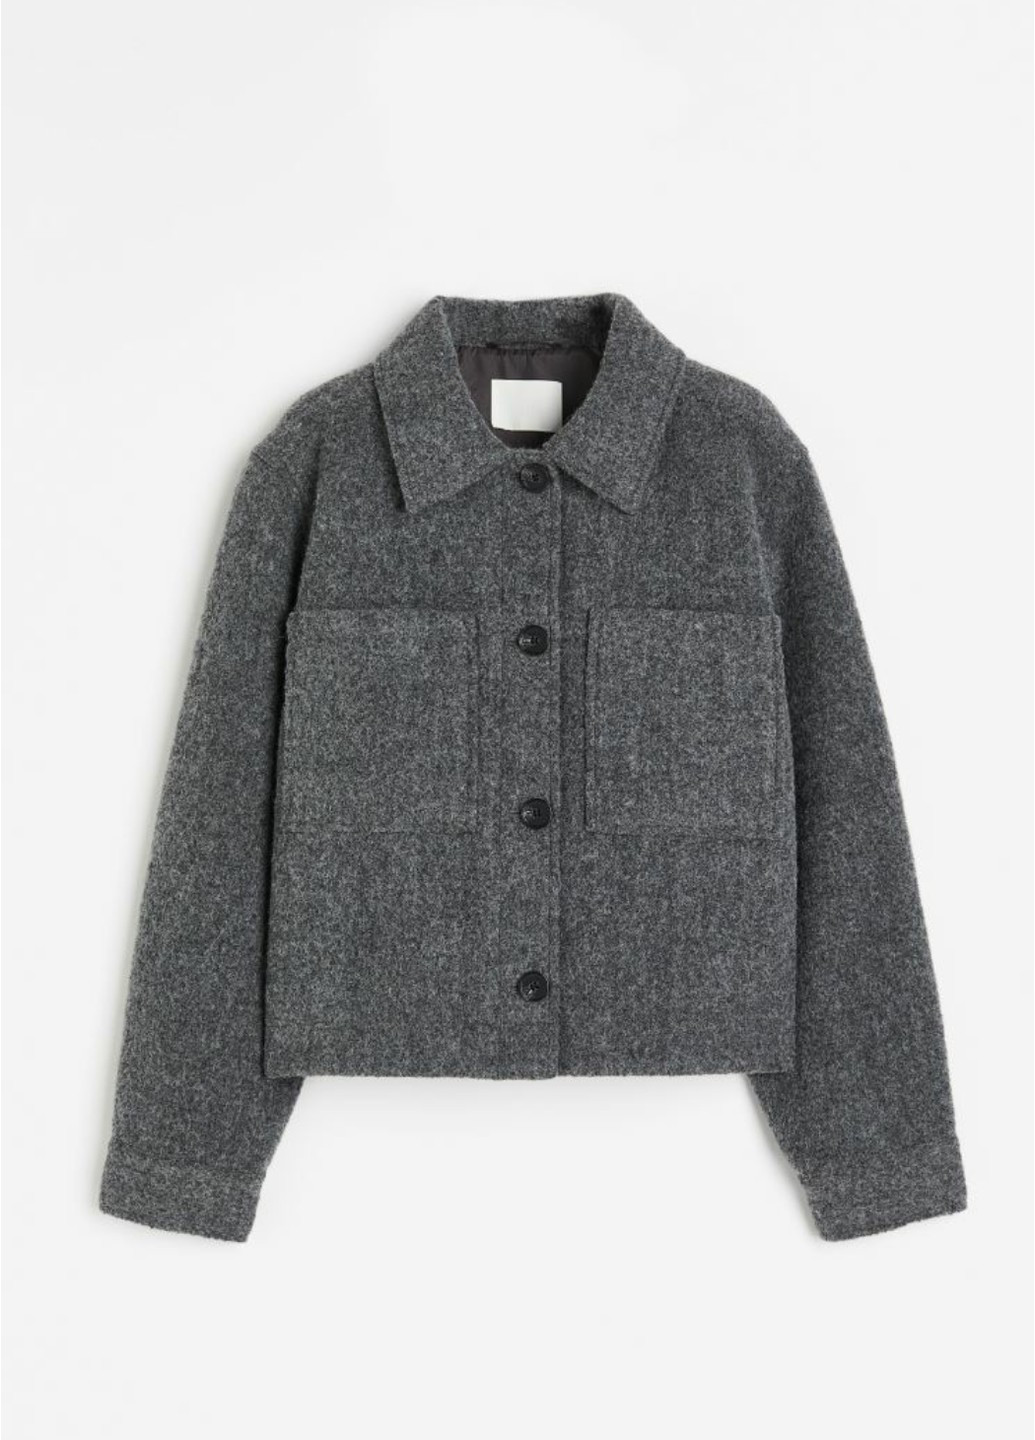 Темно-серая демисезонная женская куртка из шерстяной смеси н&м (56226) xs темно-серая H&M